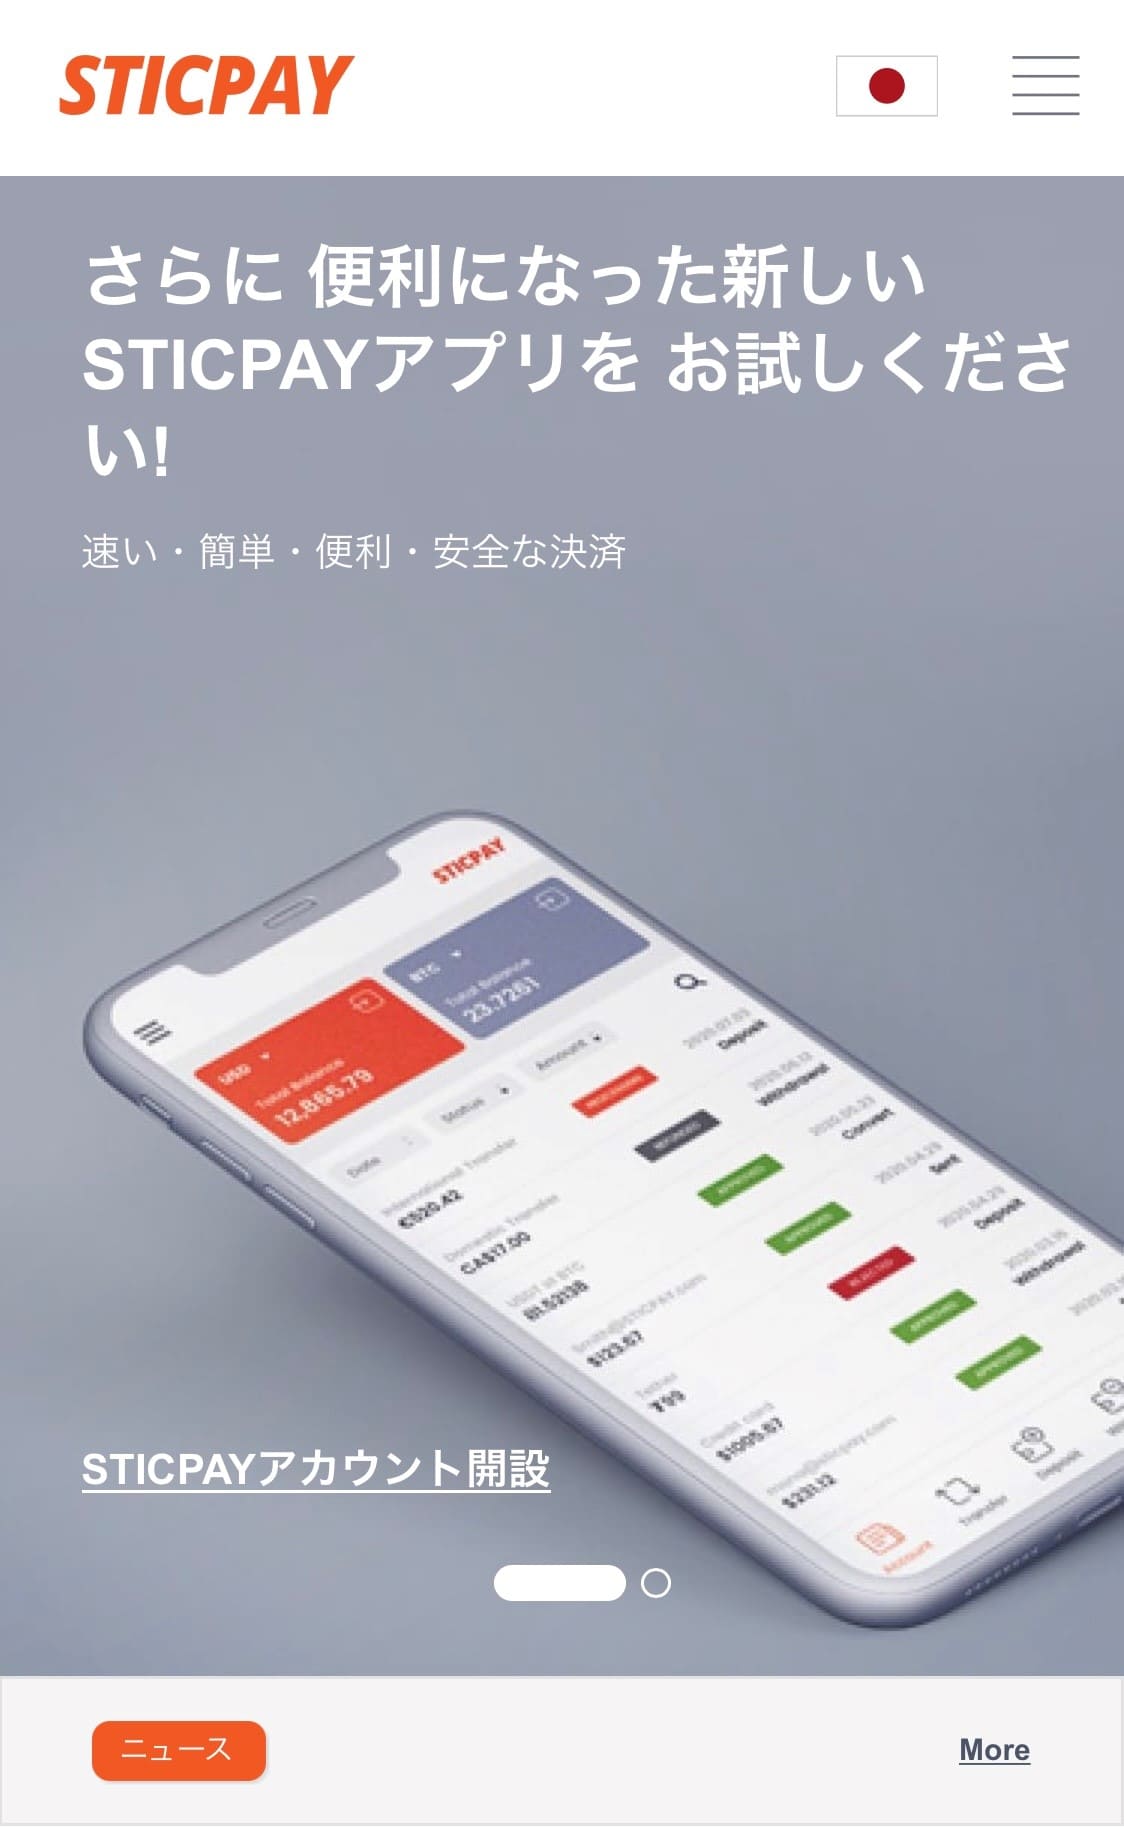 sticpay_1